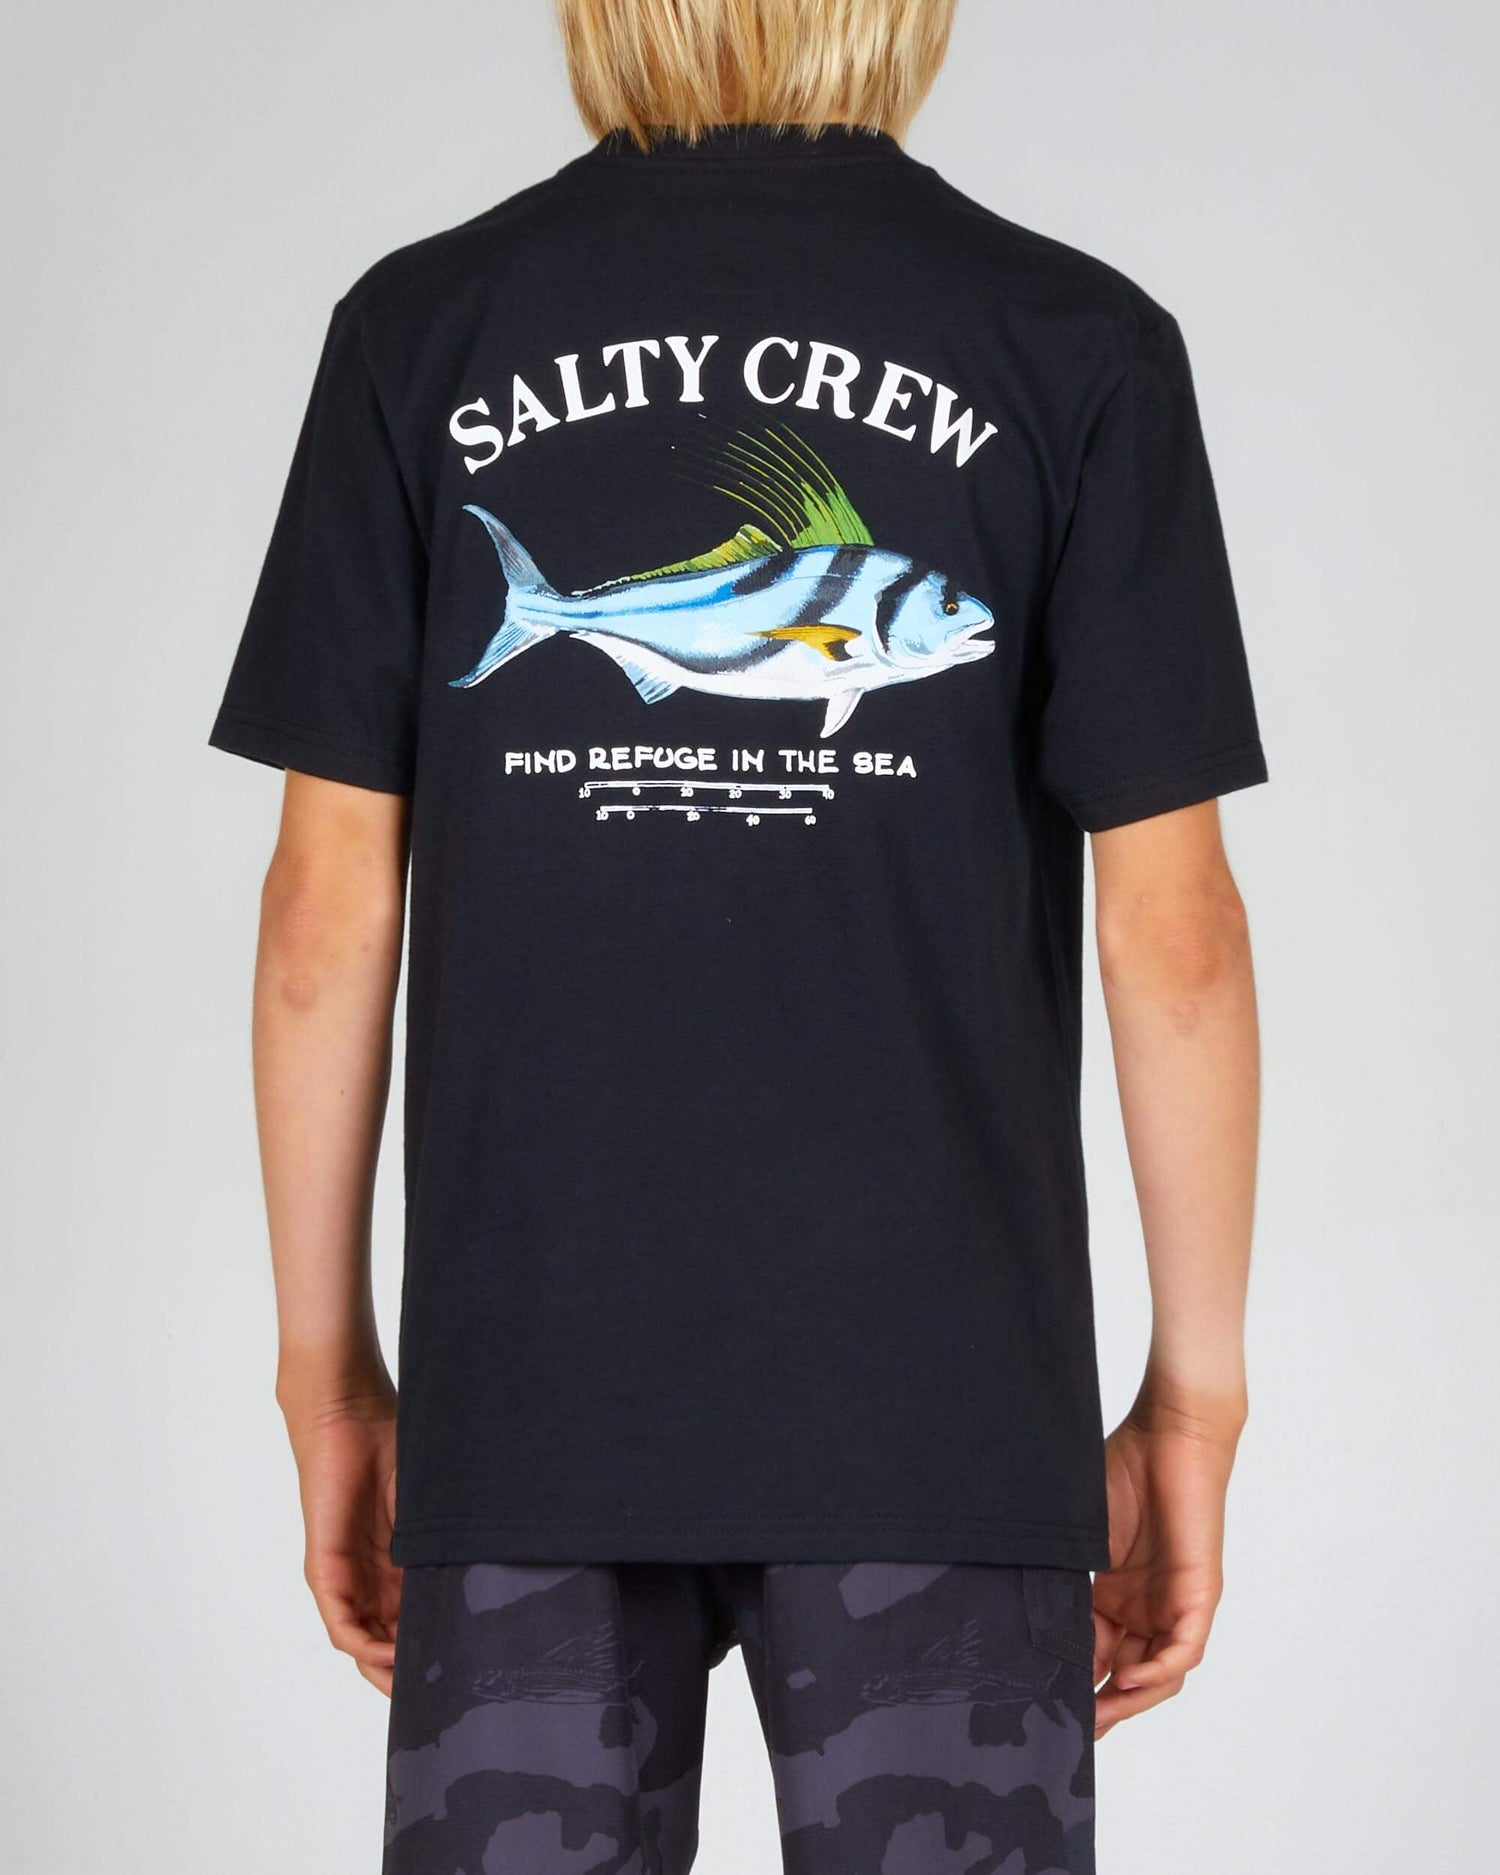 Salty Crew Boys - Hahn Boys S/S Tee - Black